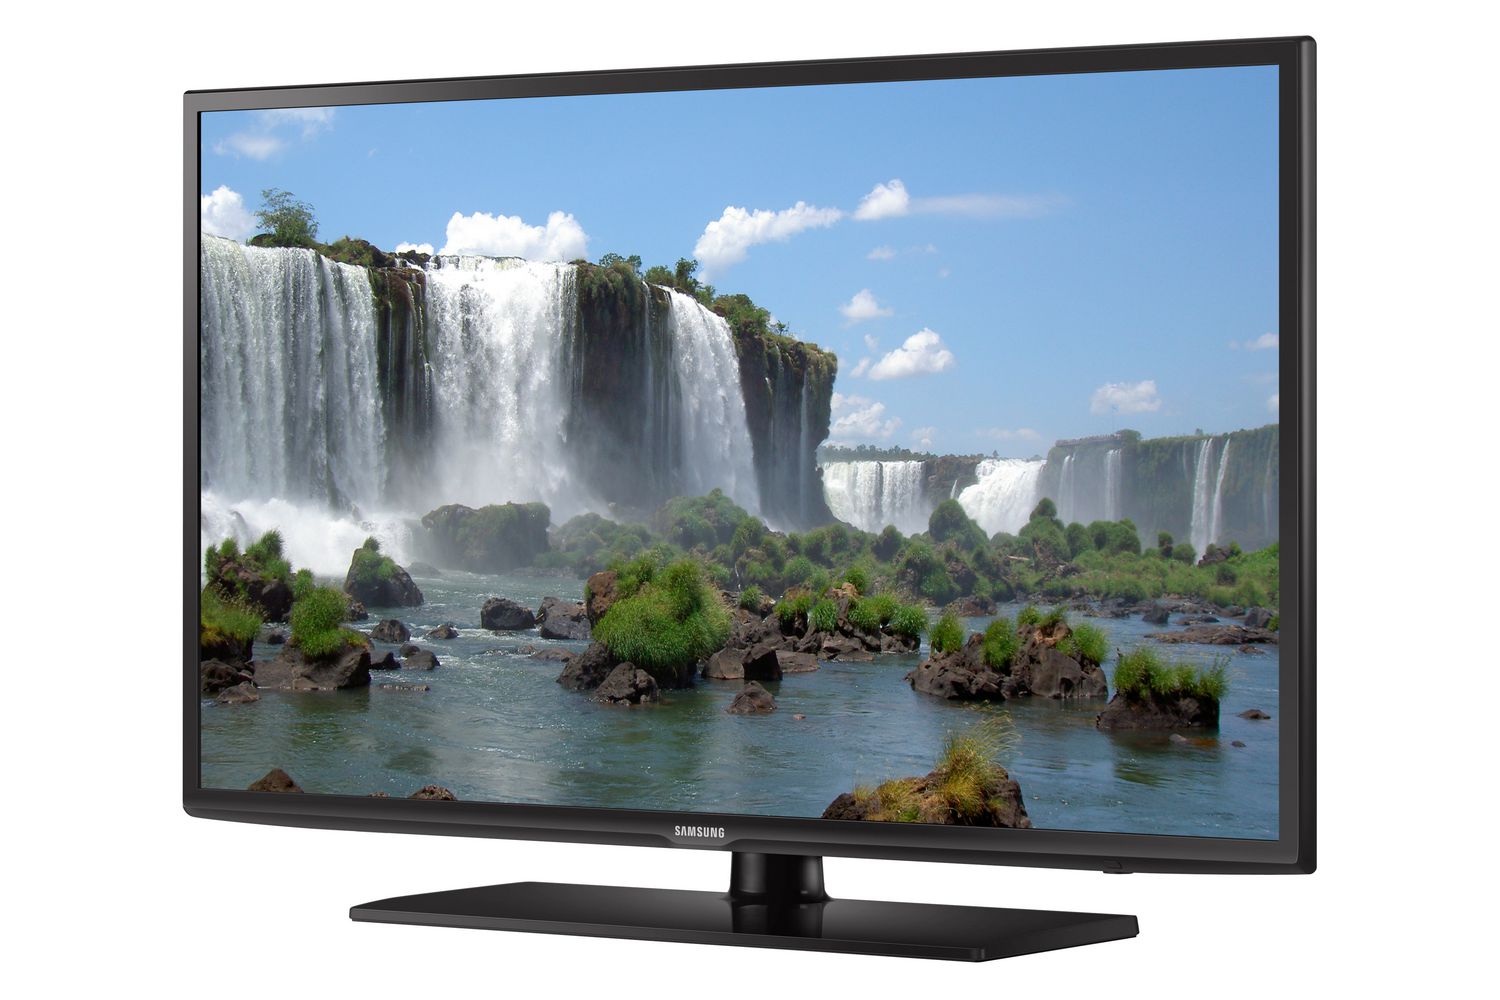 Samsung 55" Full HD 1080p Series Smart LED TV - UN55J6201 ...